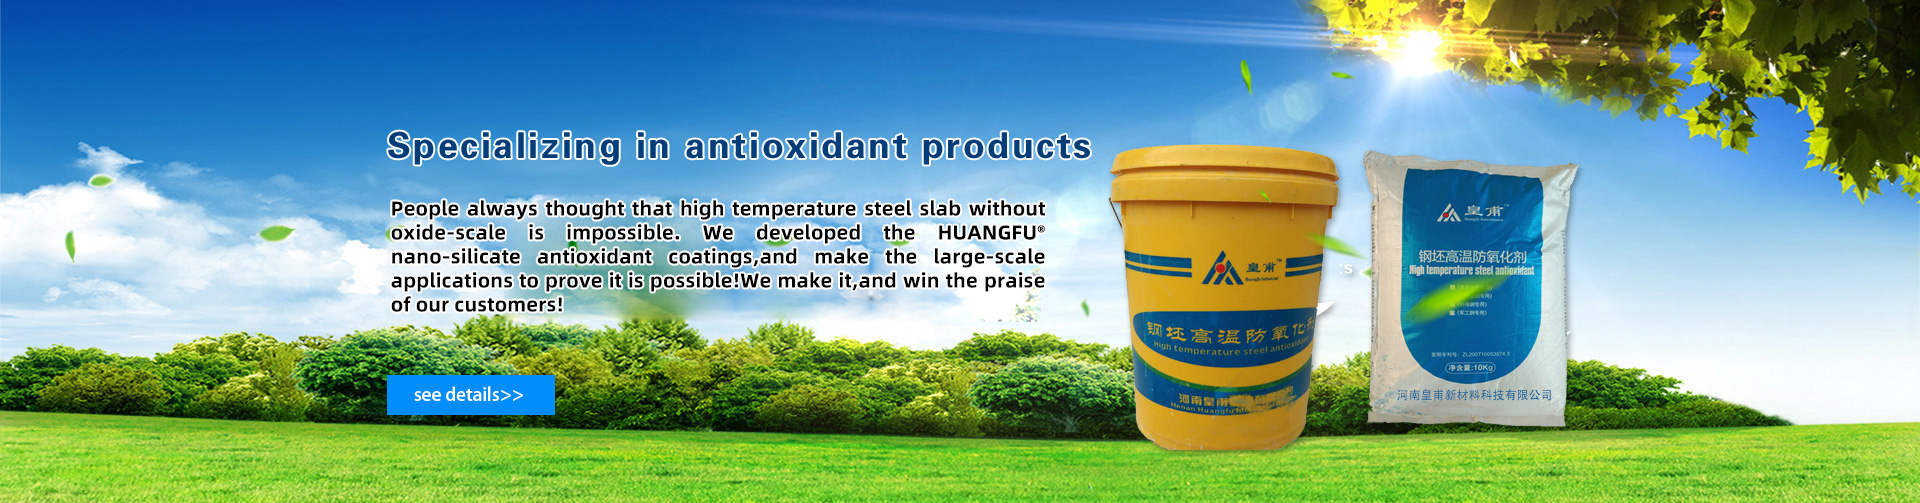 Henan Huangfu New Materials Technology Co., Ltd.